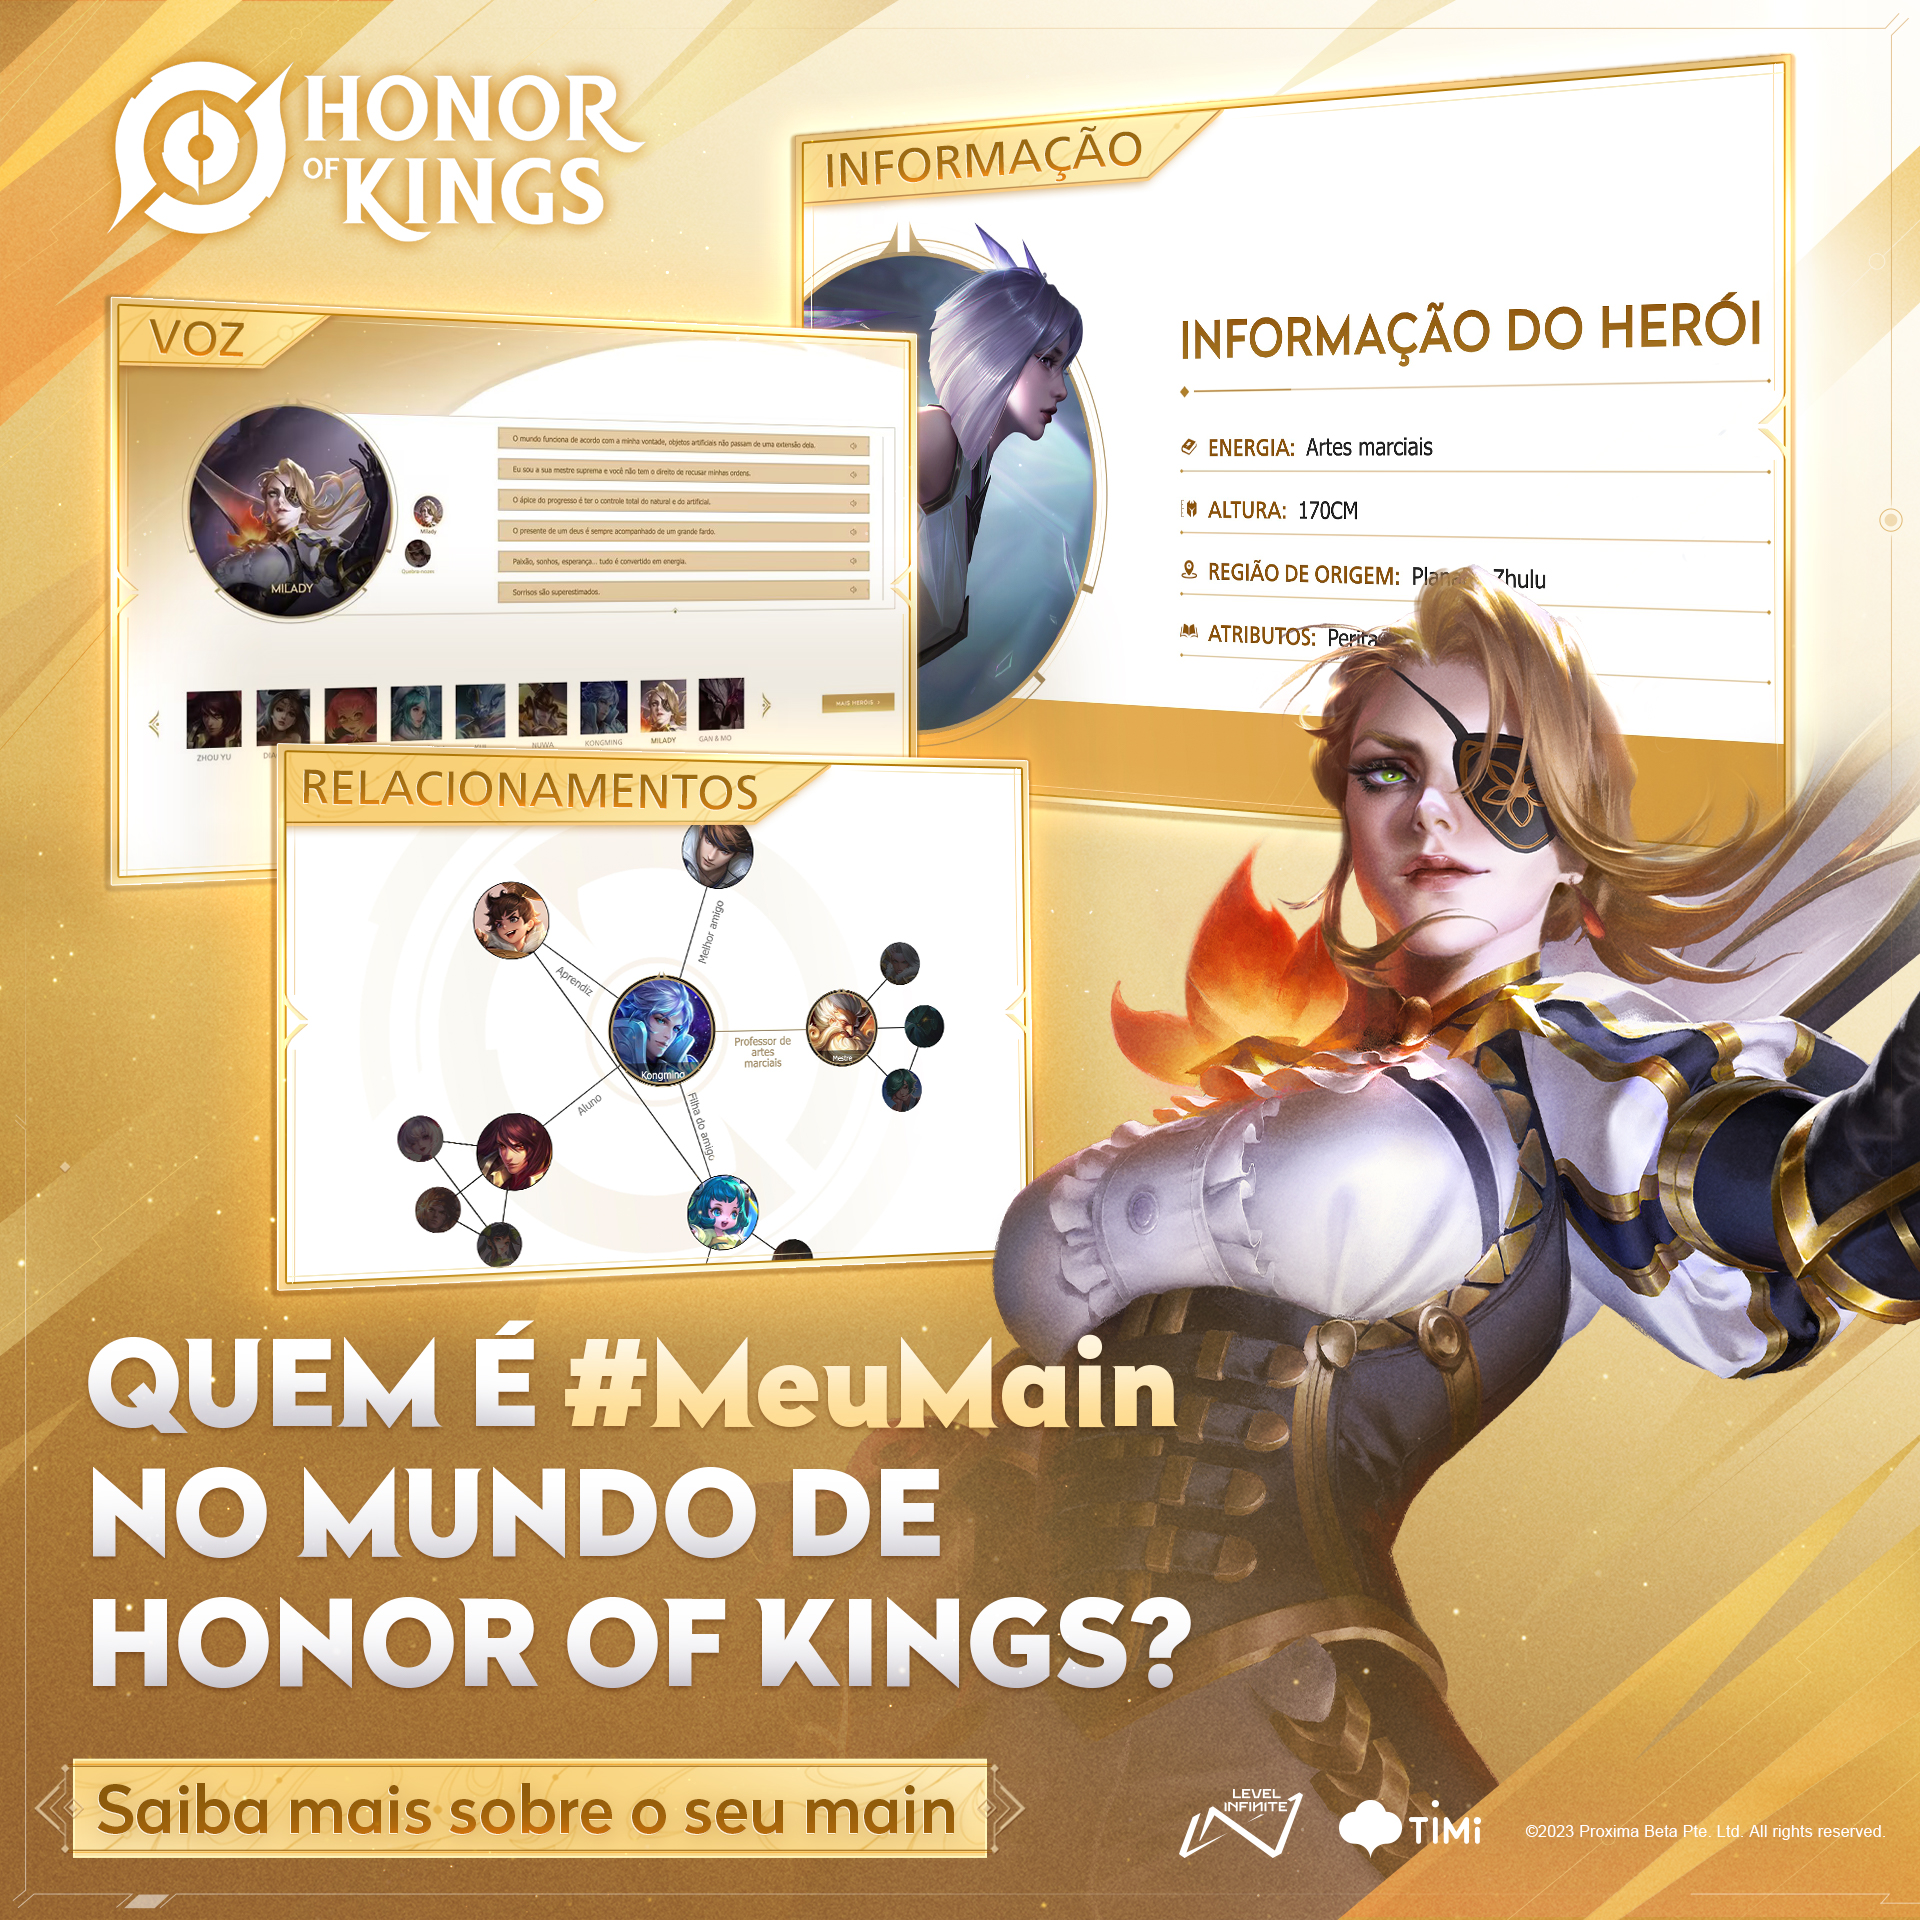 Honor of Kings recebe novo herói e passe de temporada